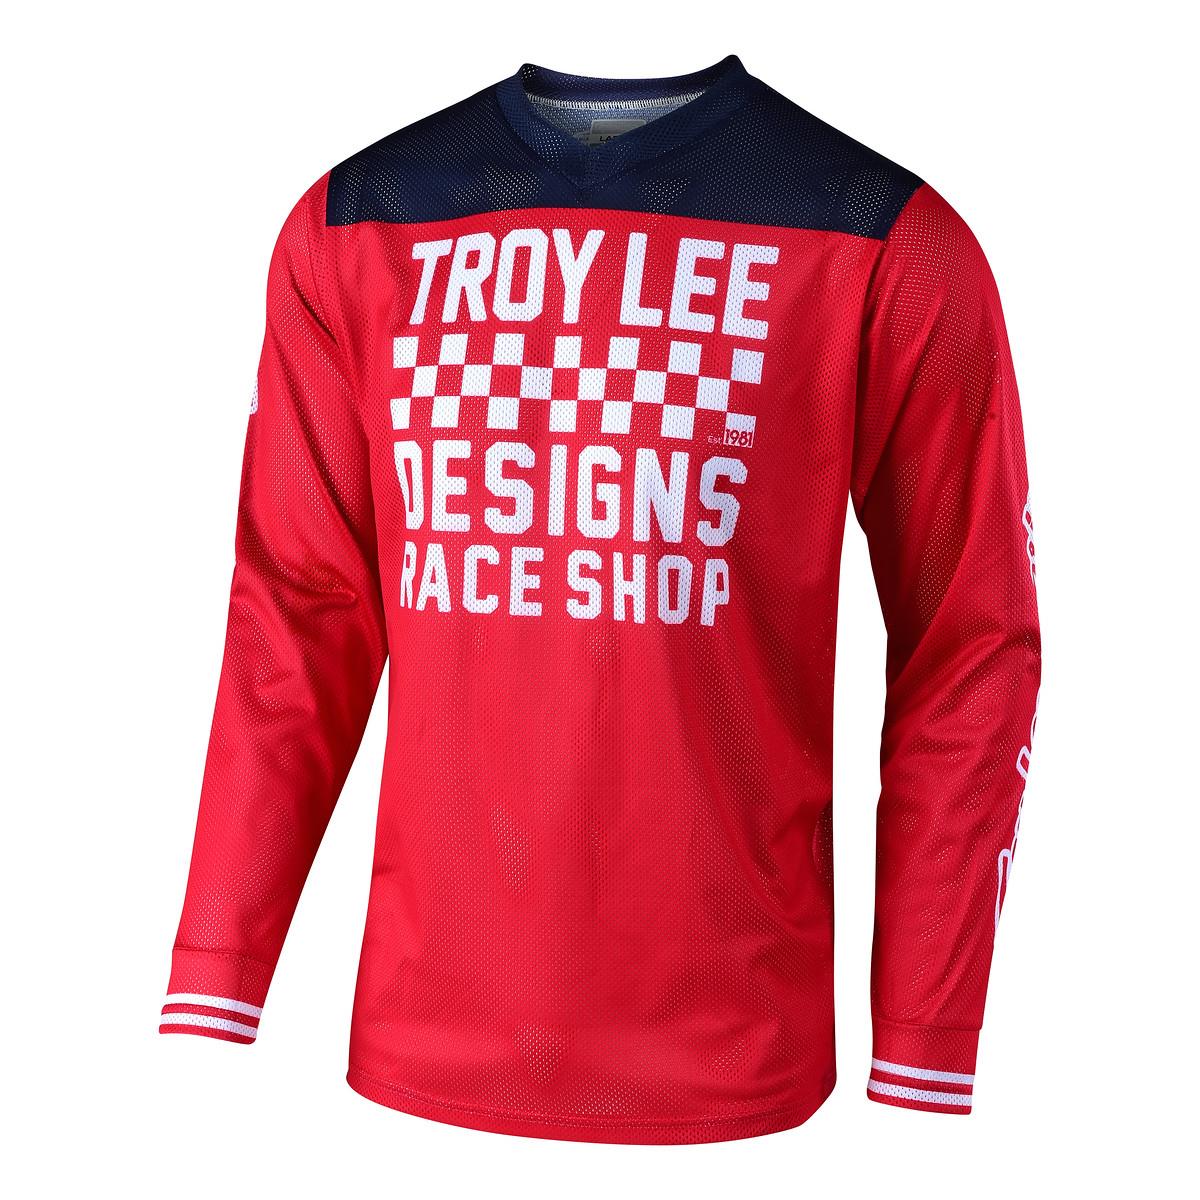 Troy Lee Designs Jersey GP Air Raceshop - Rot